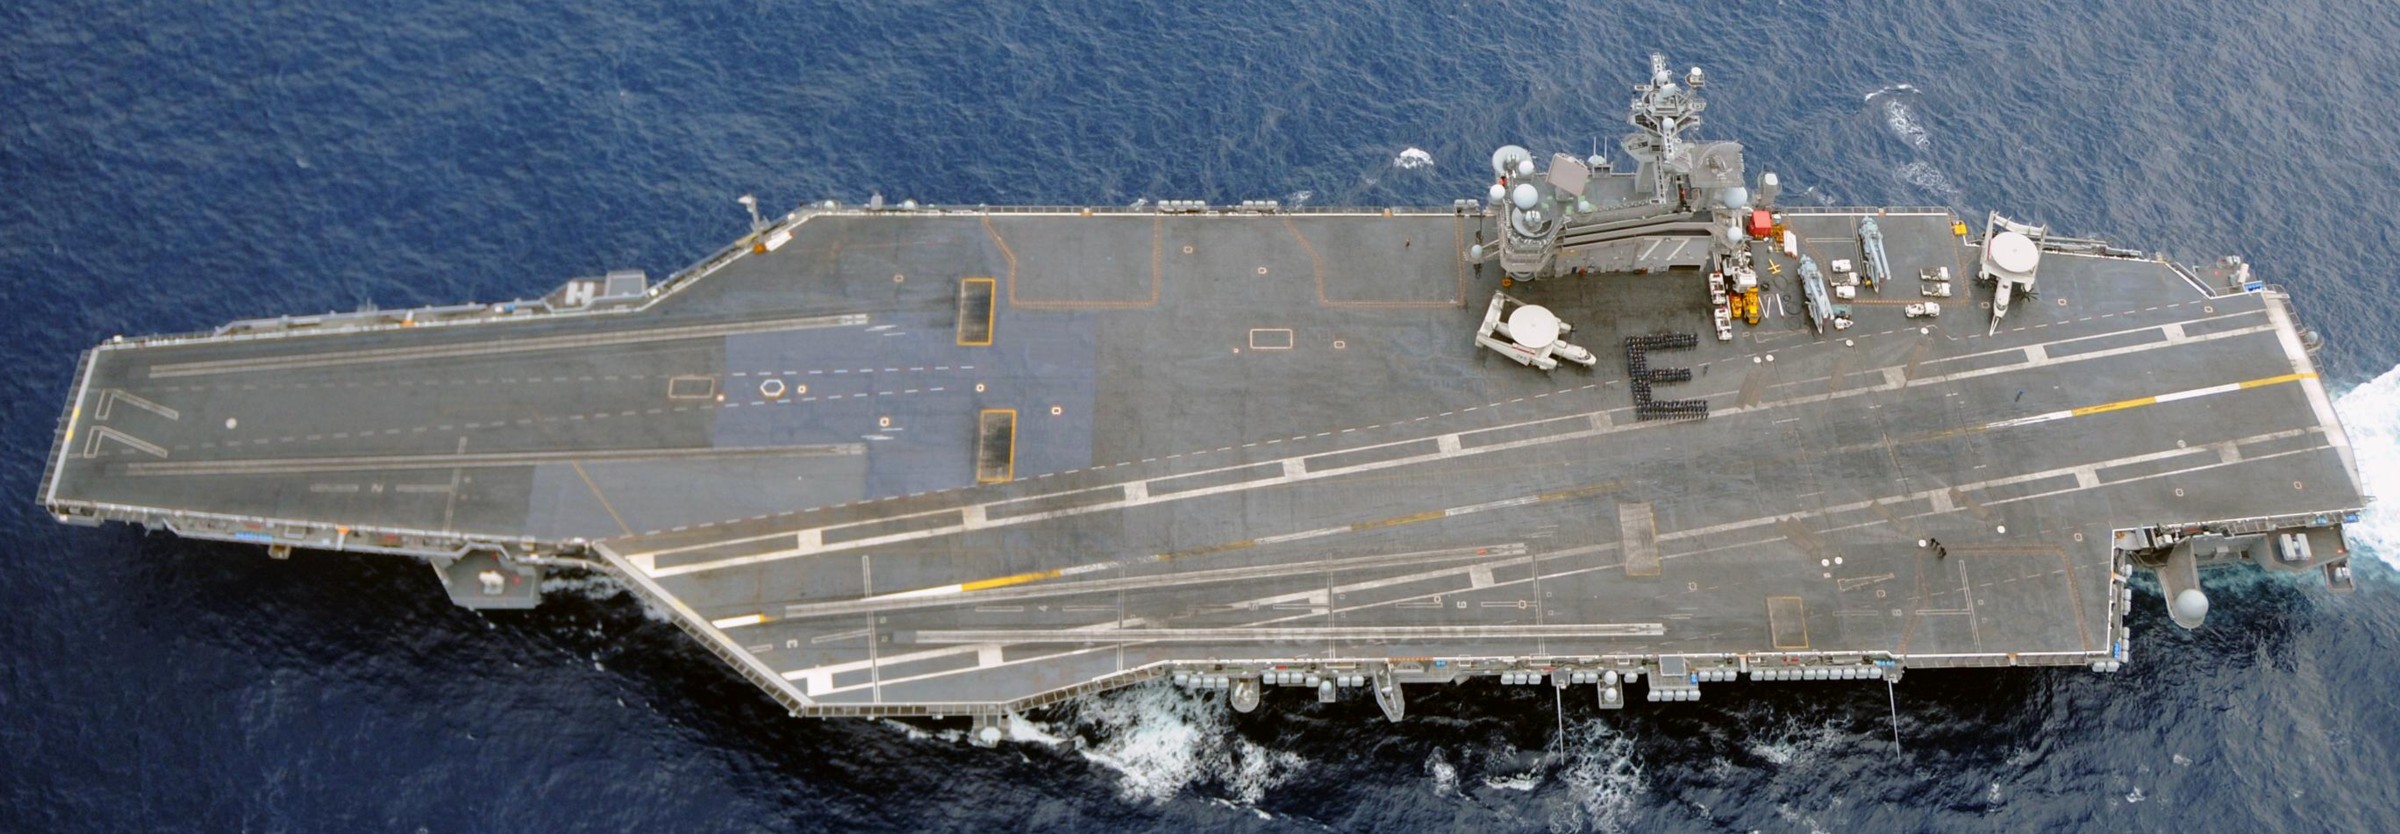 cvn-77 uss george h. w. bush aircraft carrier nimitz class us navy 08